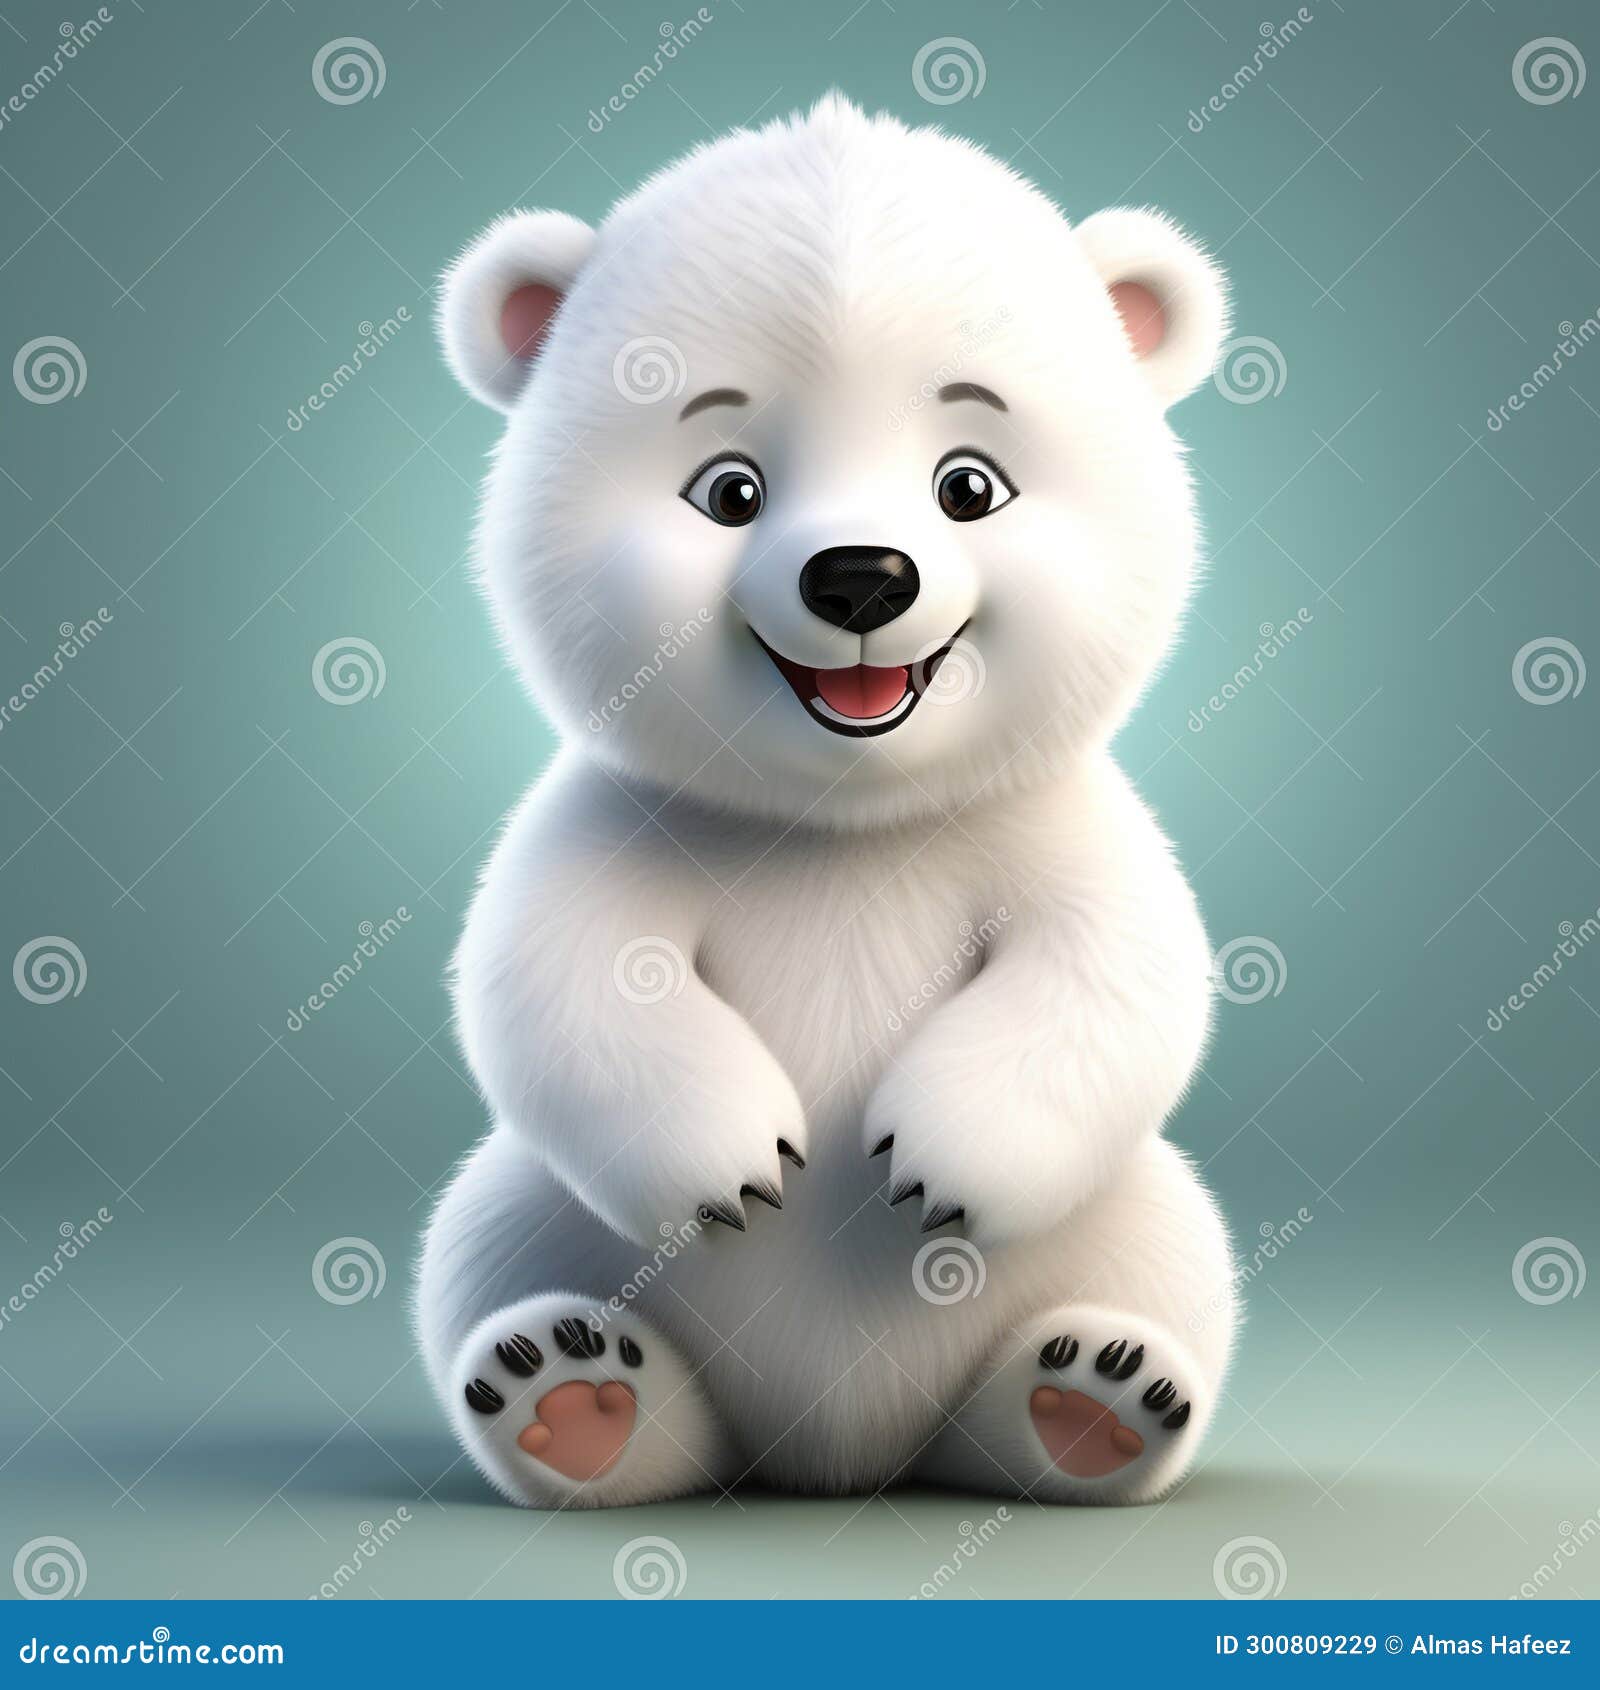 vibrant polar bear delight: cute 3d isolation by ai